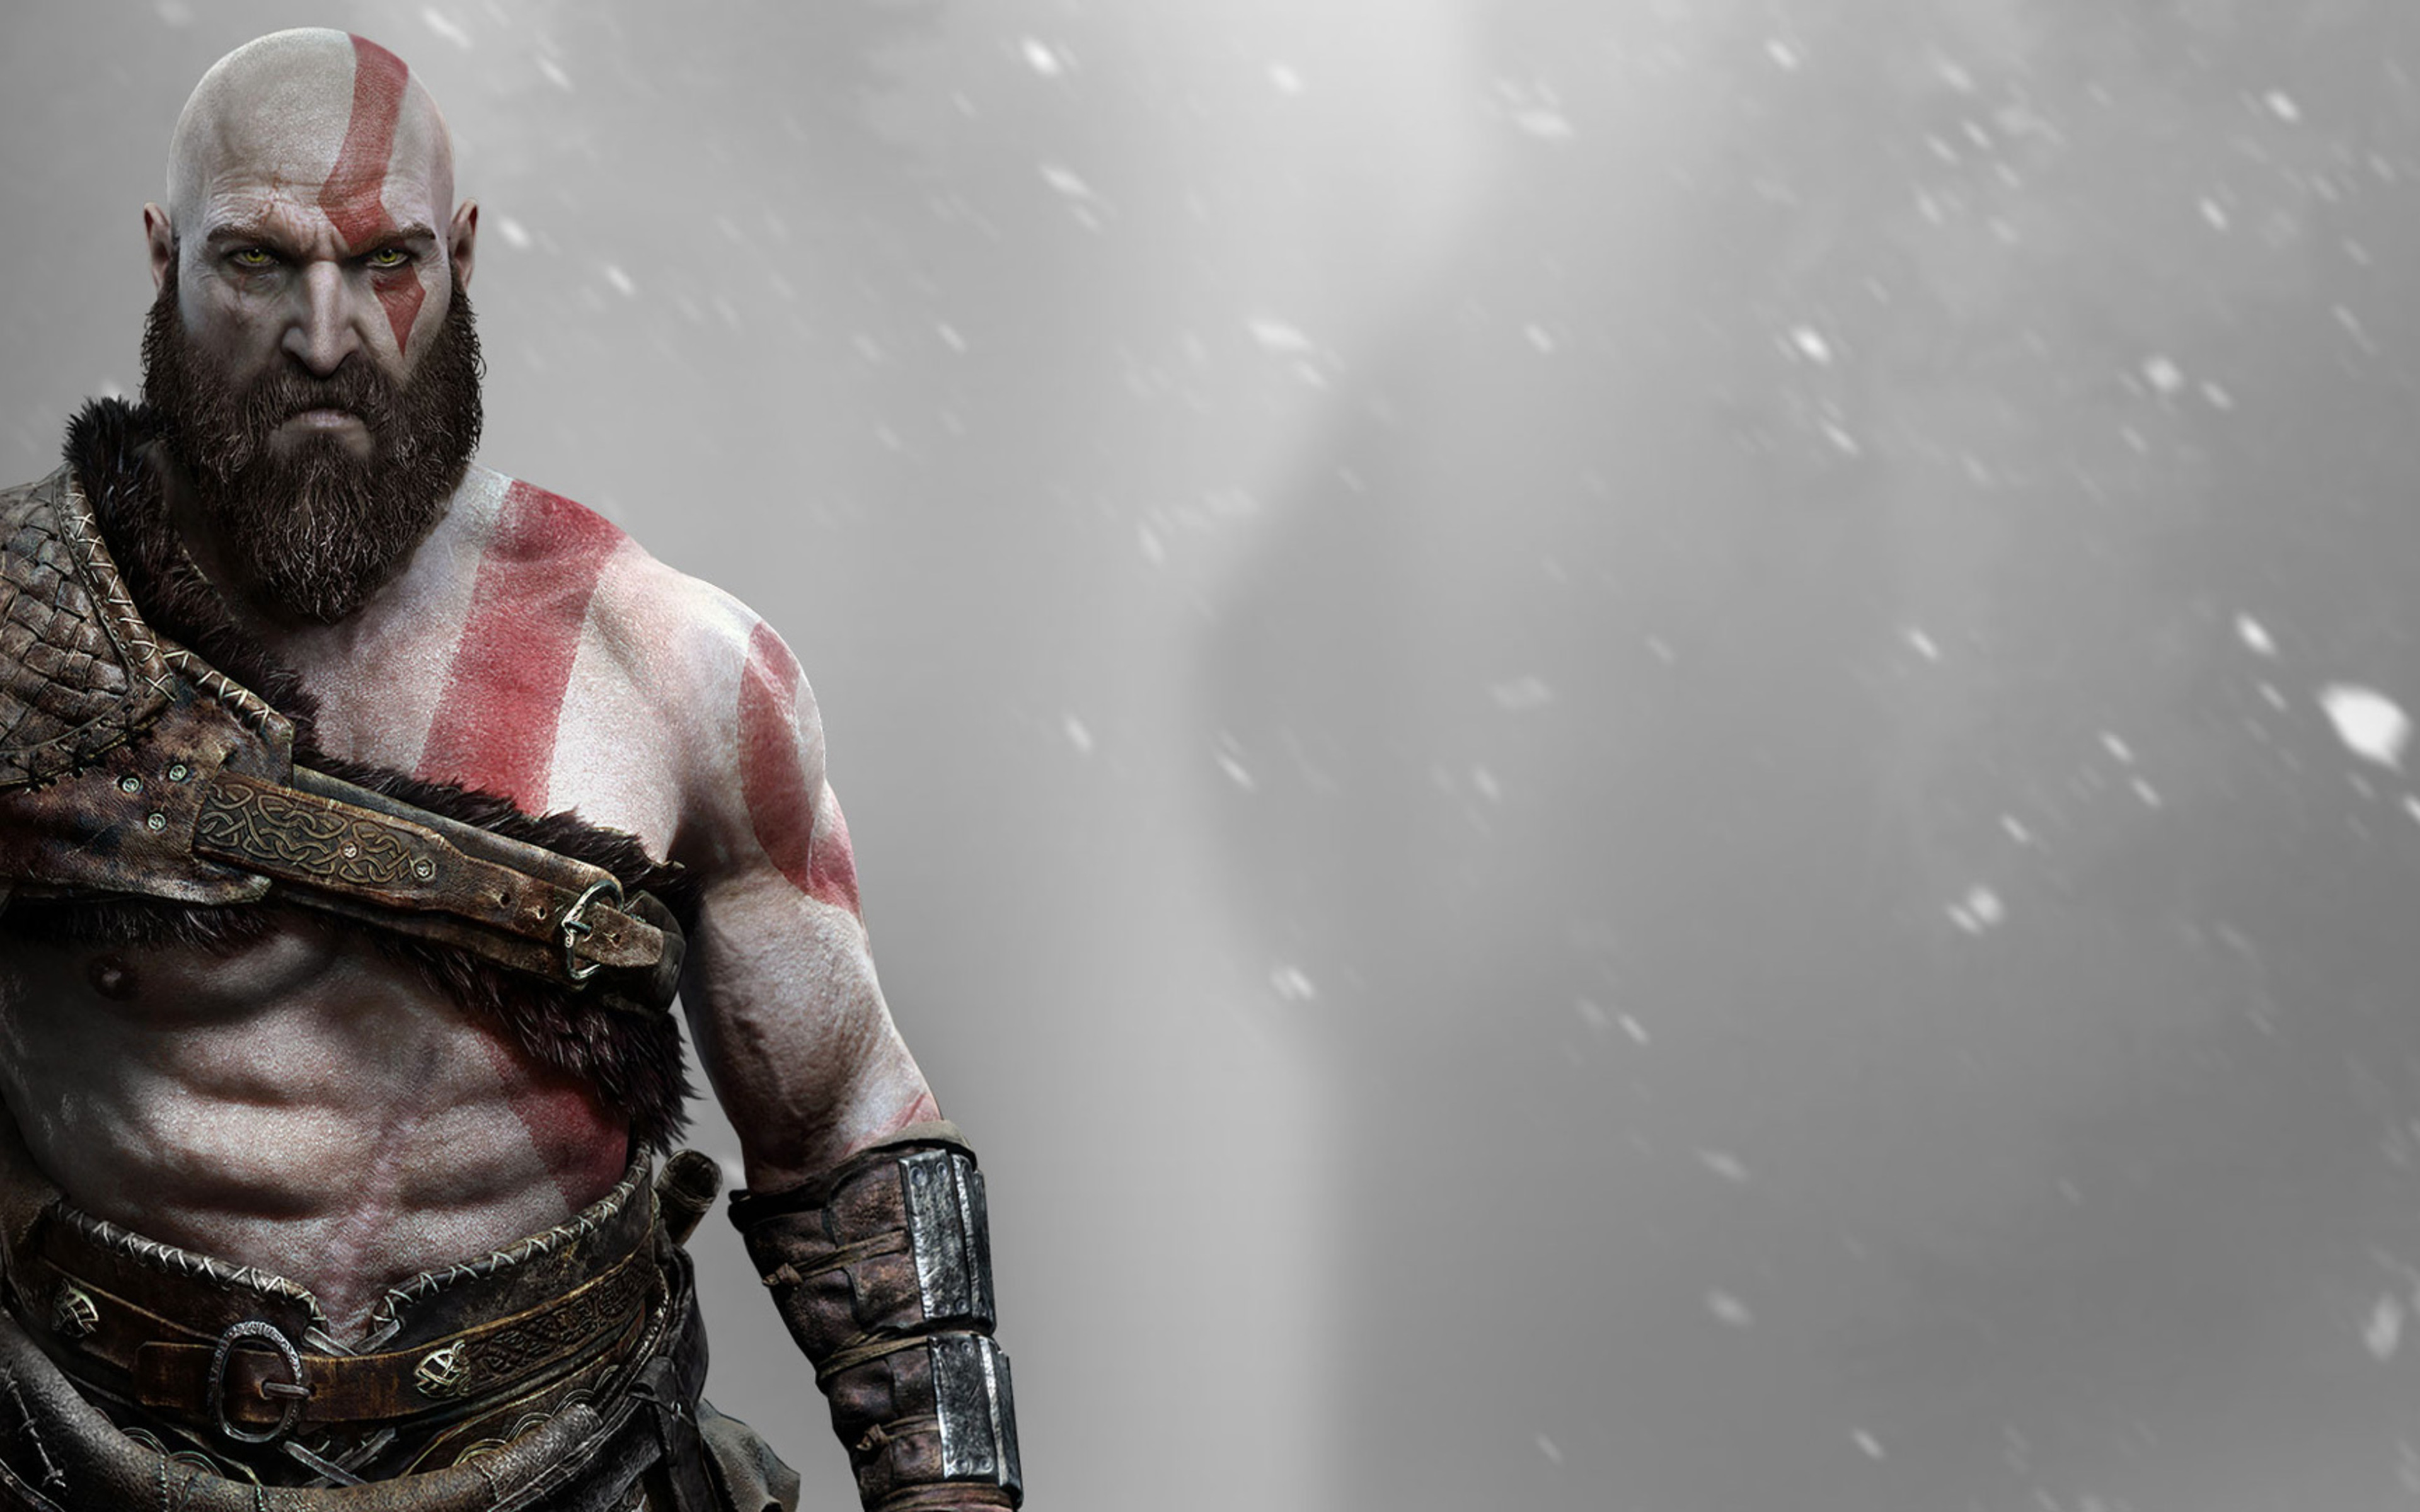 kratos tapete,erfundener charakter,action figur,bildschirmfoto,cg kunstwerk,fleisch